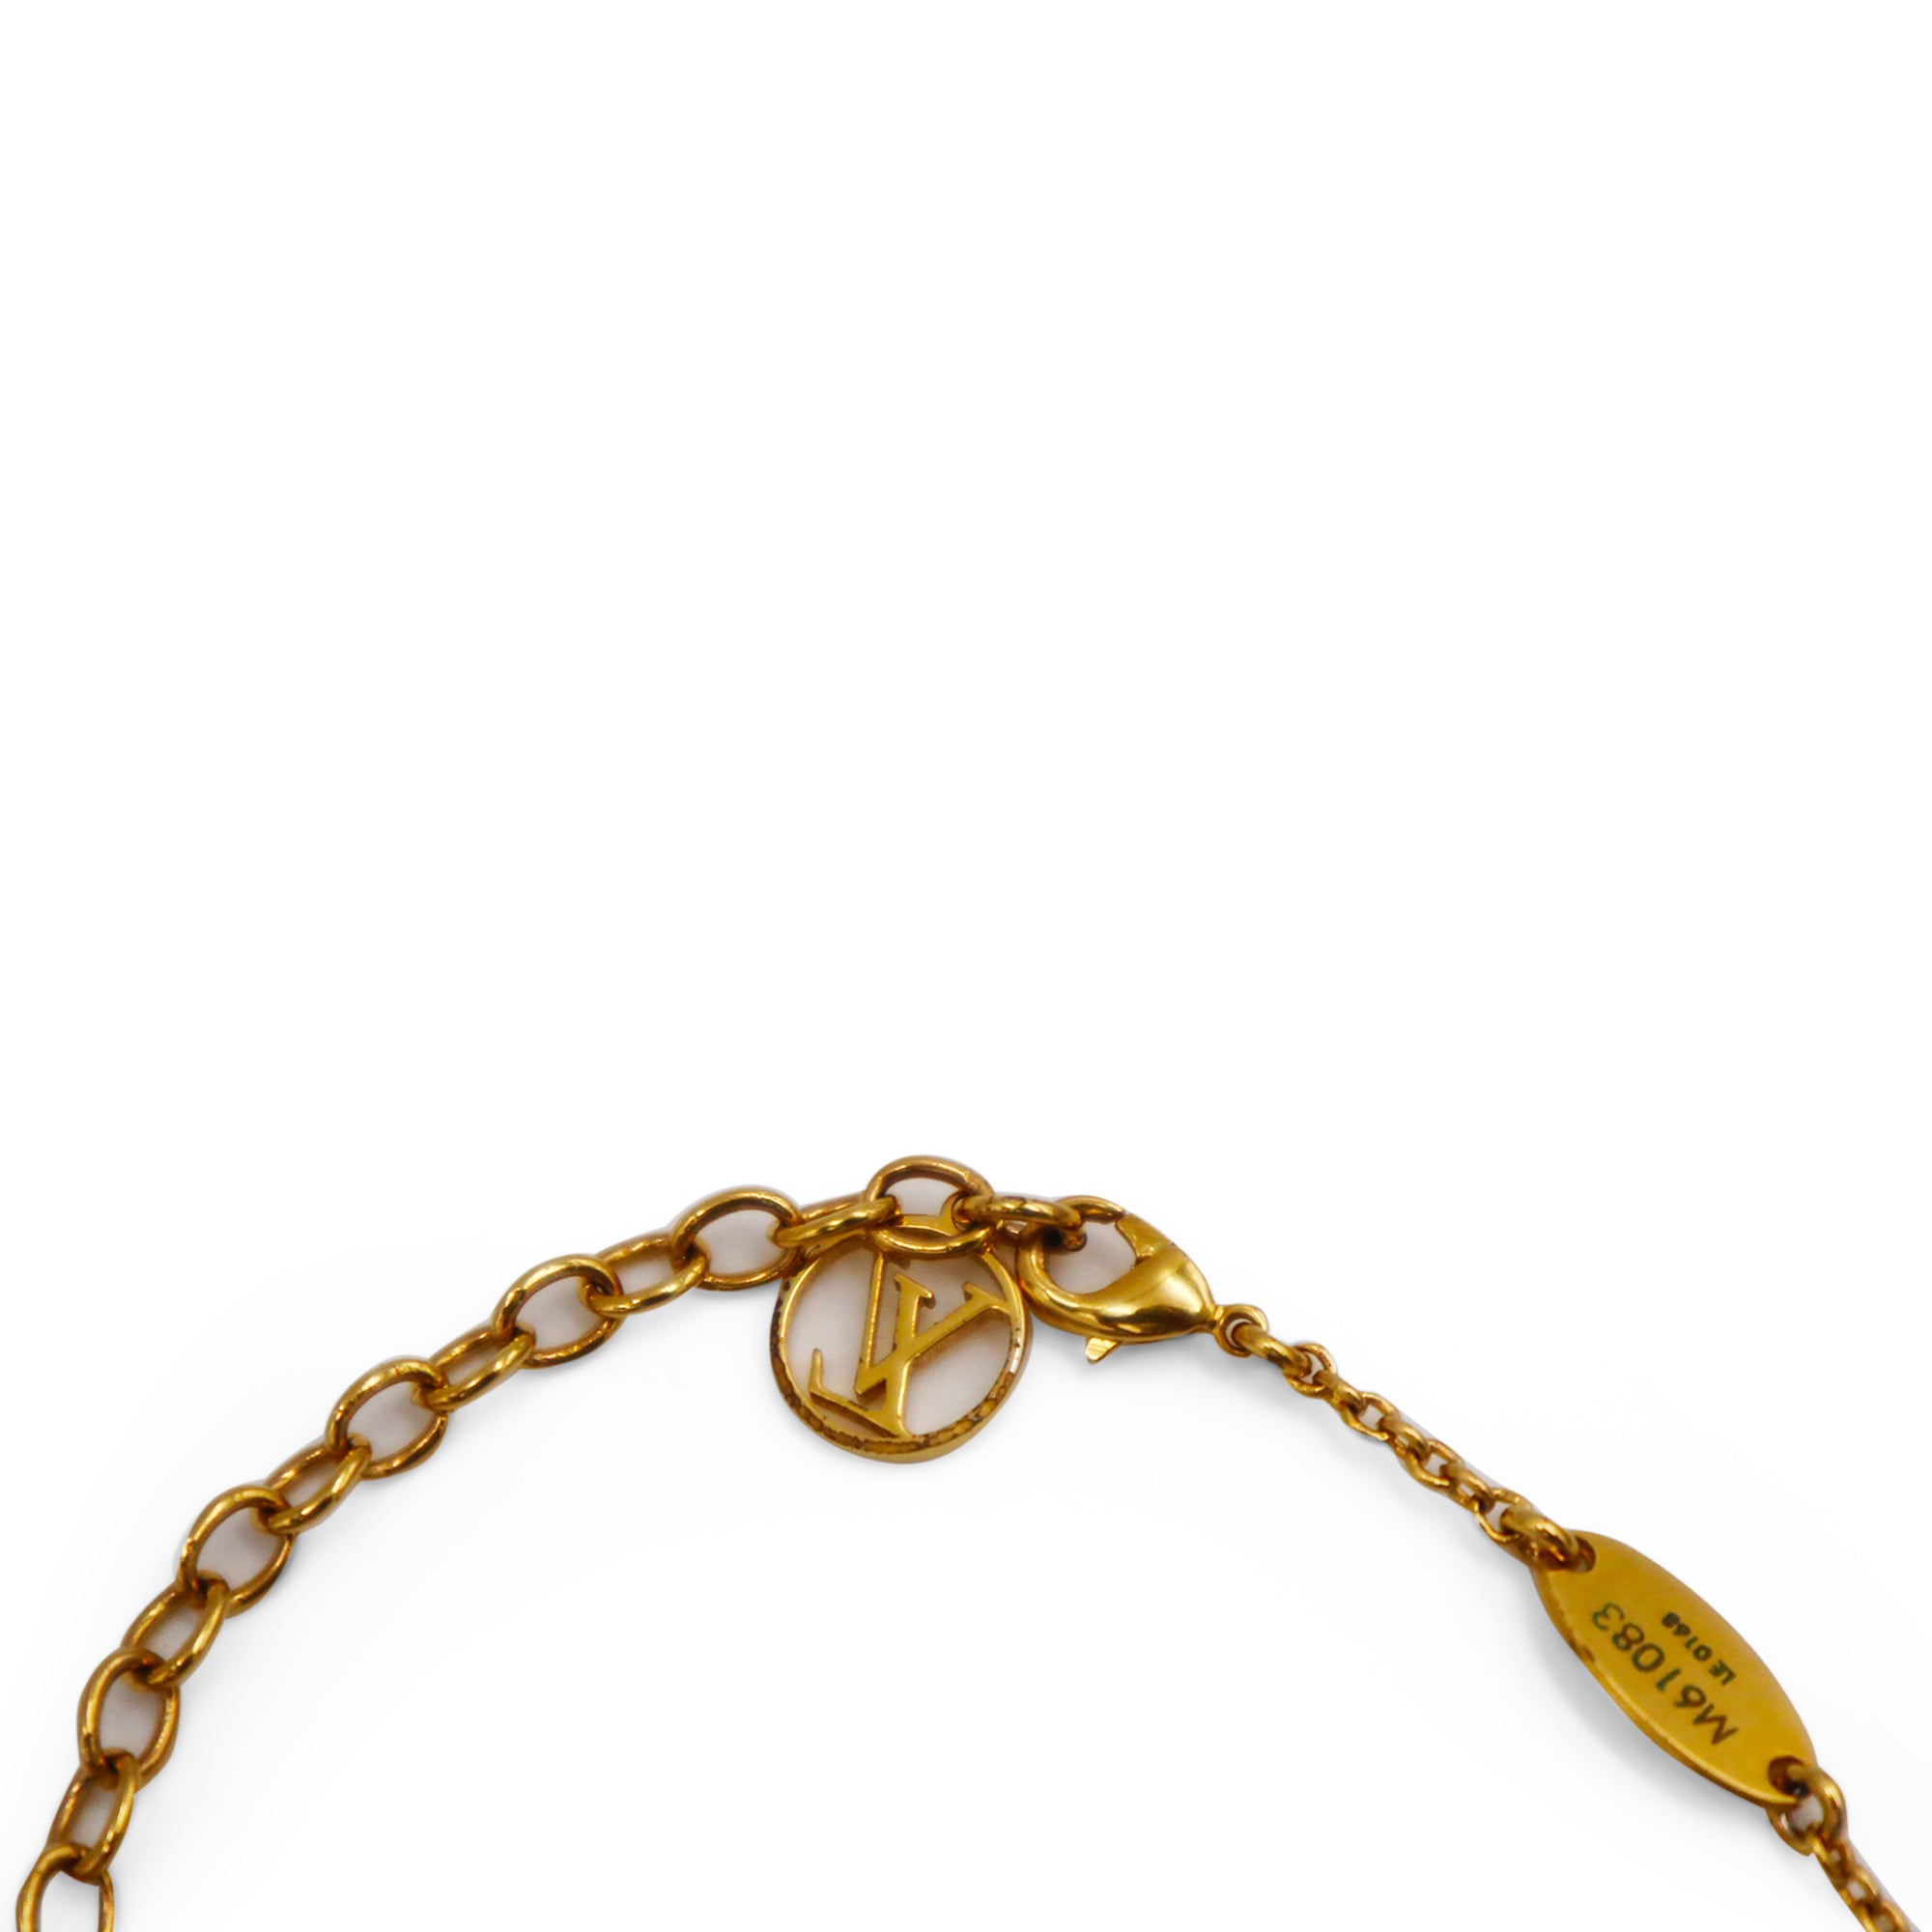 Louis Vuitton Essential V Necklace Gold